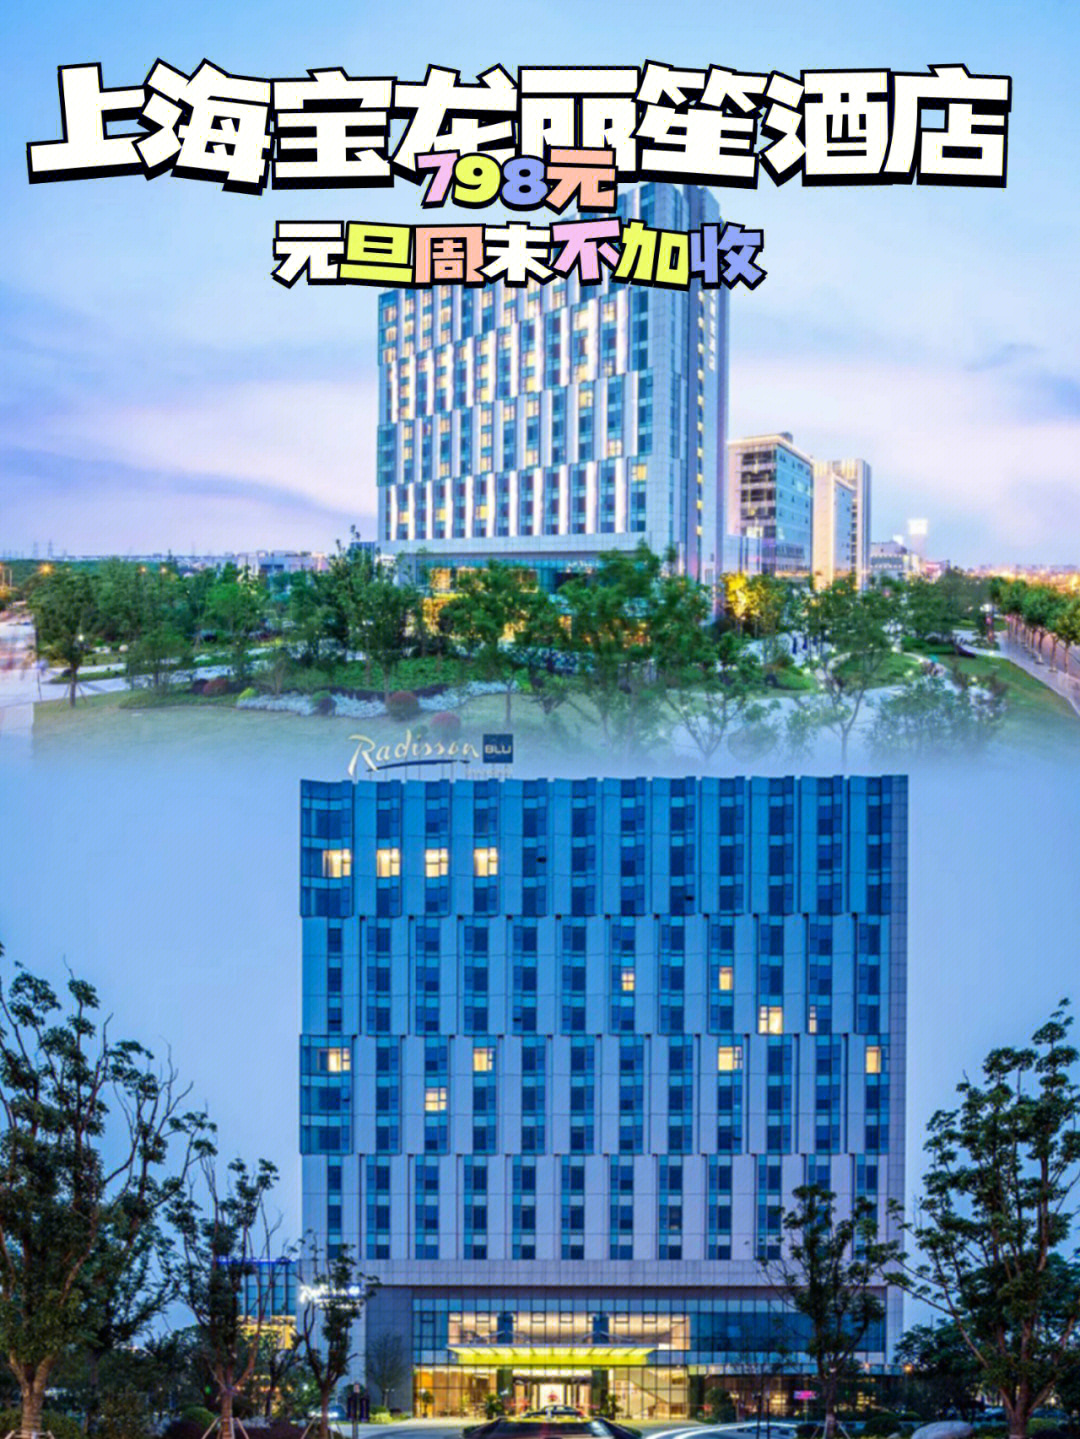 09上海宝龙丽笙酒店自带乐园,举步即湿地公园,充分满足一站式遛娃